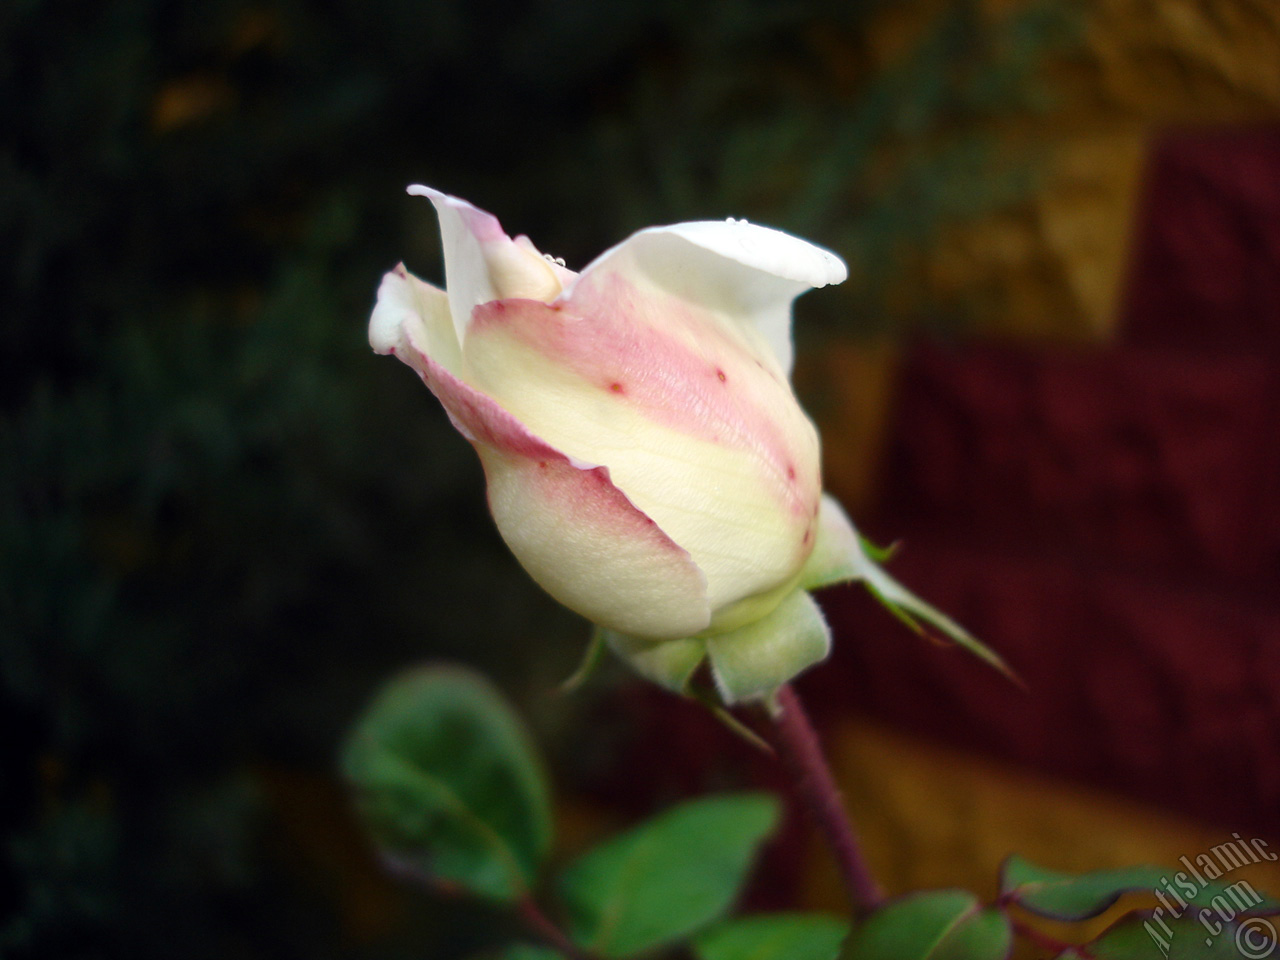 Variegated (mottled) rose photo.
